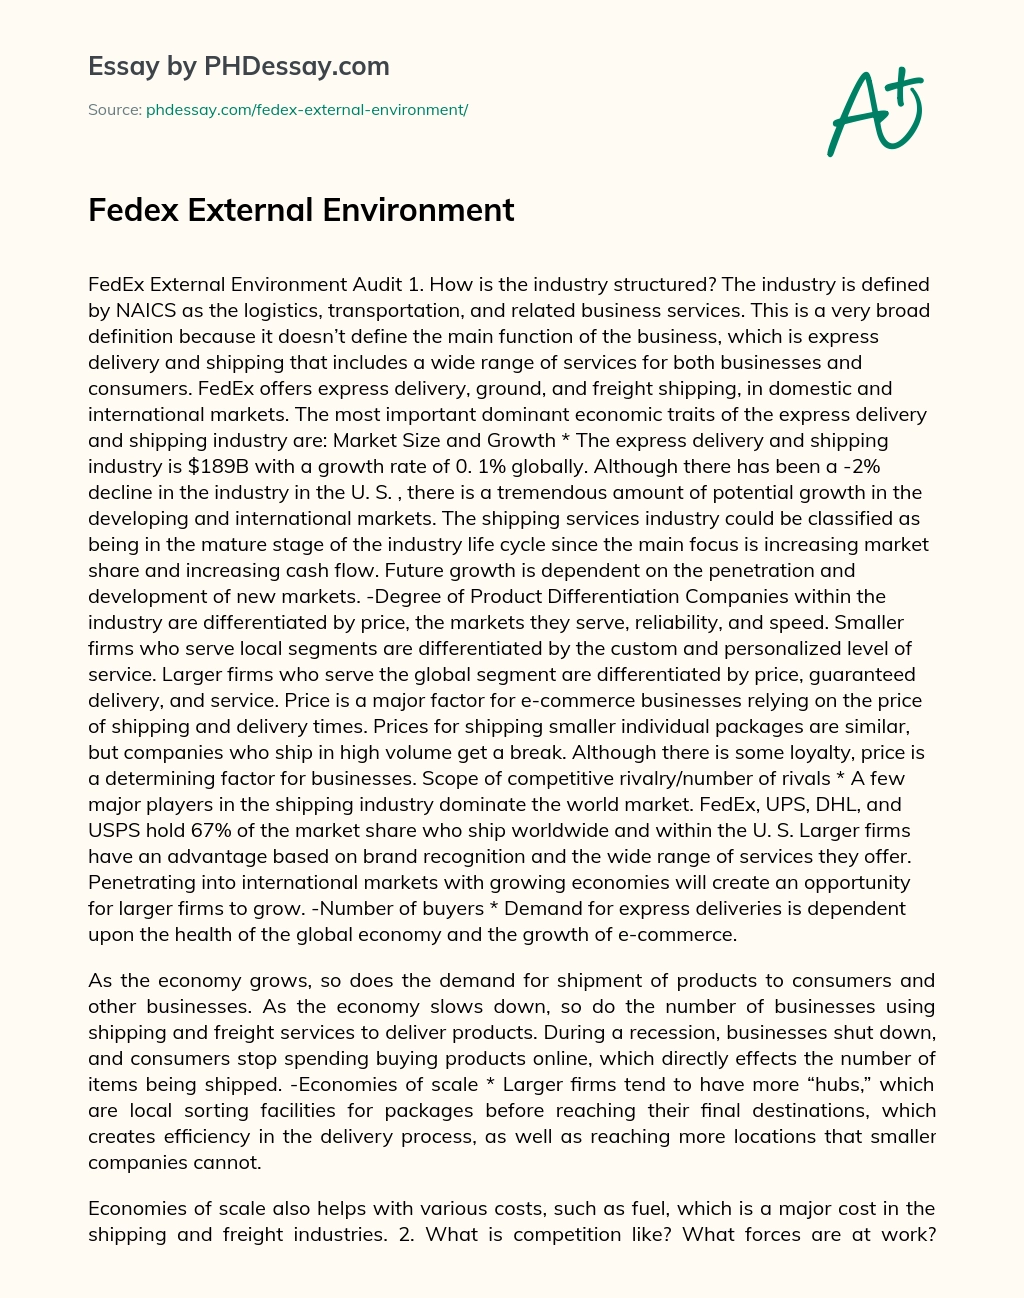 Fedex External Environment essay